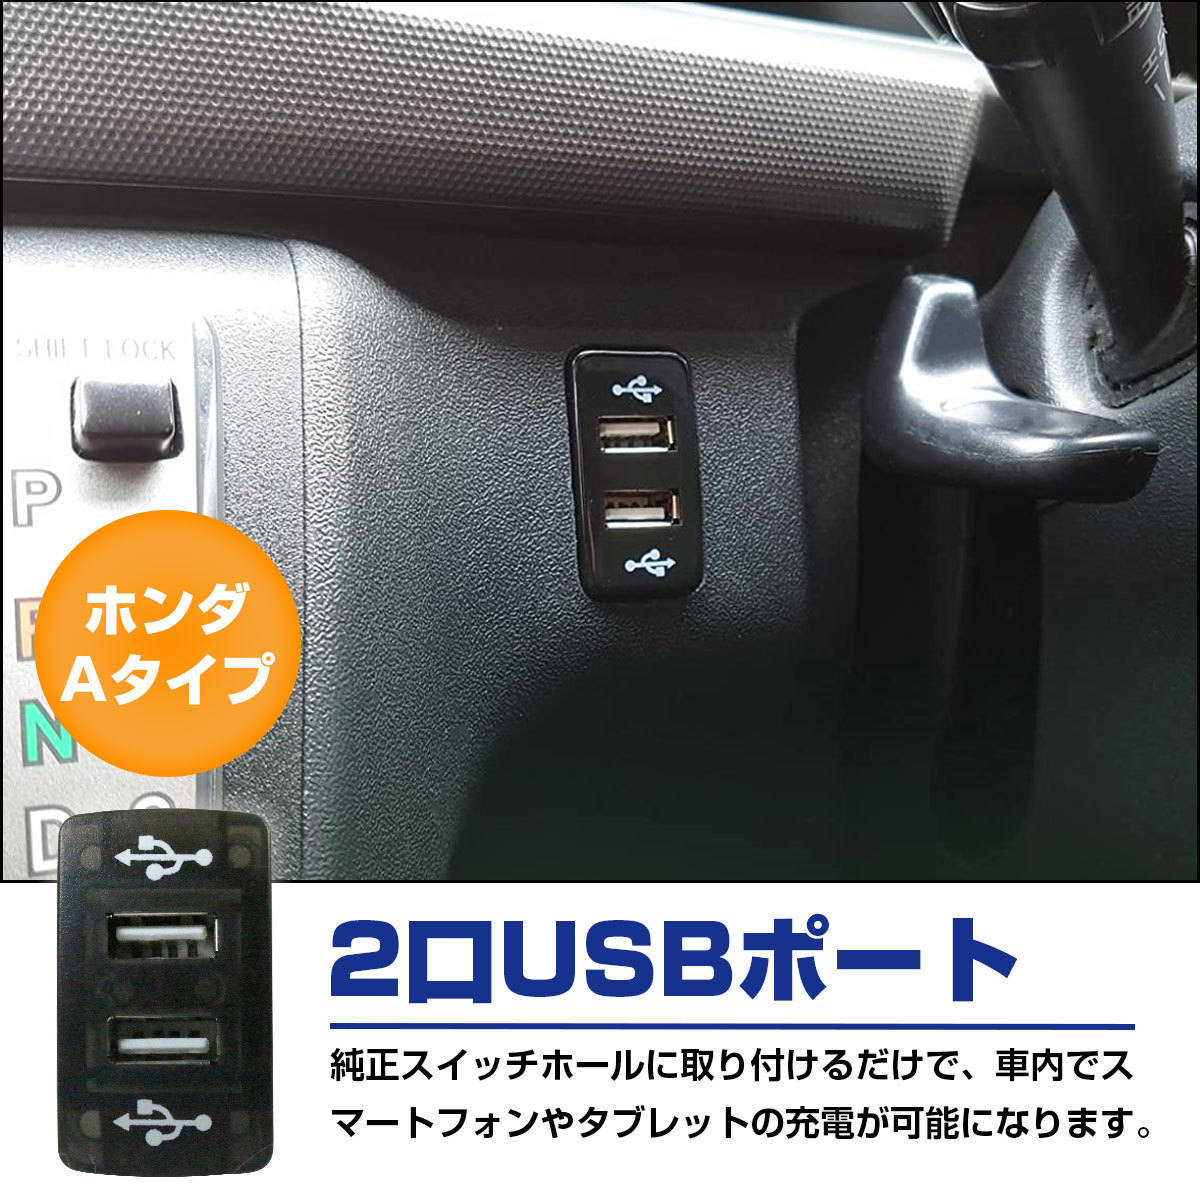 9310円 【国産】 Azur ハンドルカバー CR-V ステアリングカバー エナメルパール M 外径約38-39cm XS54J24A-M